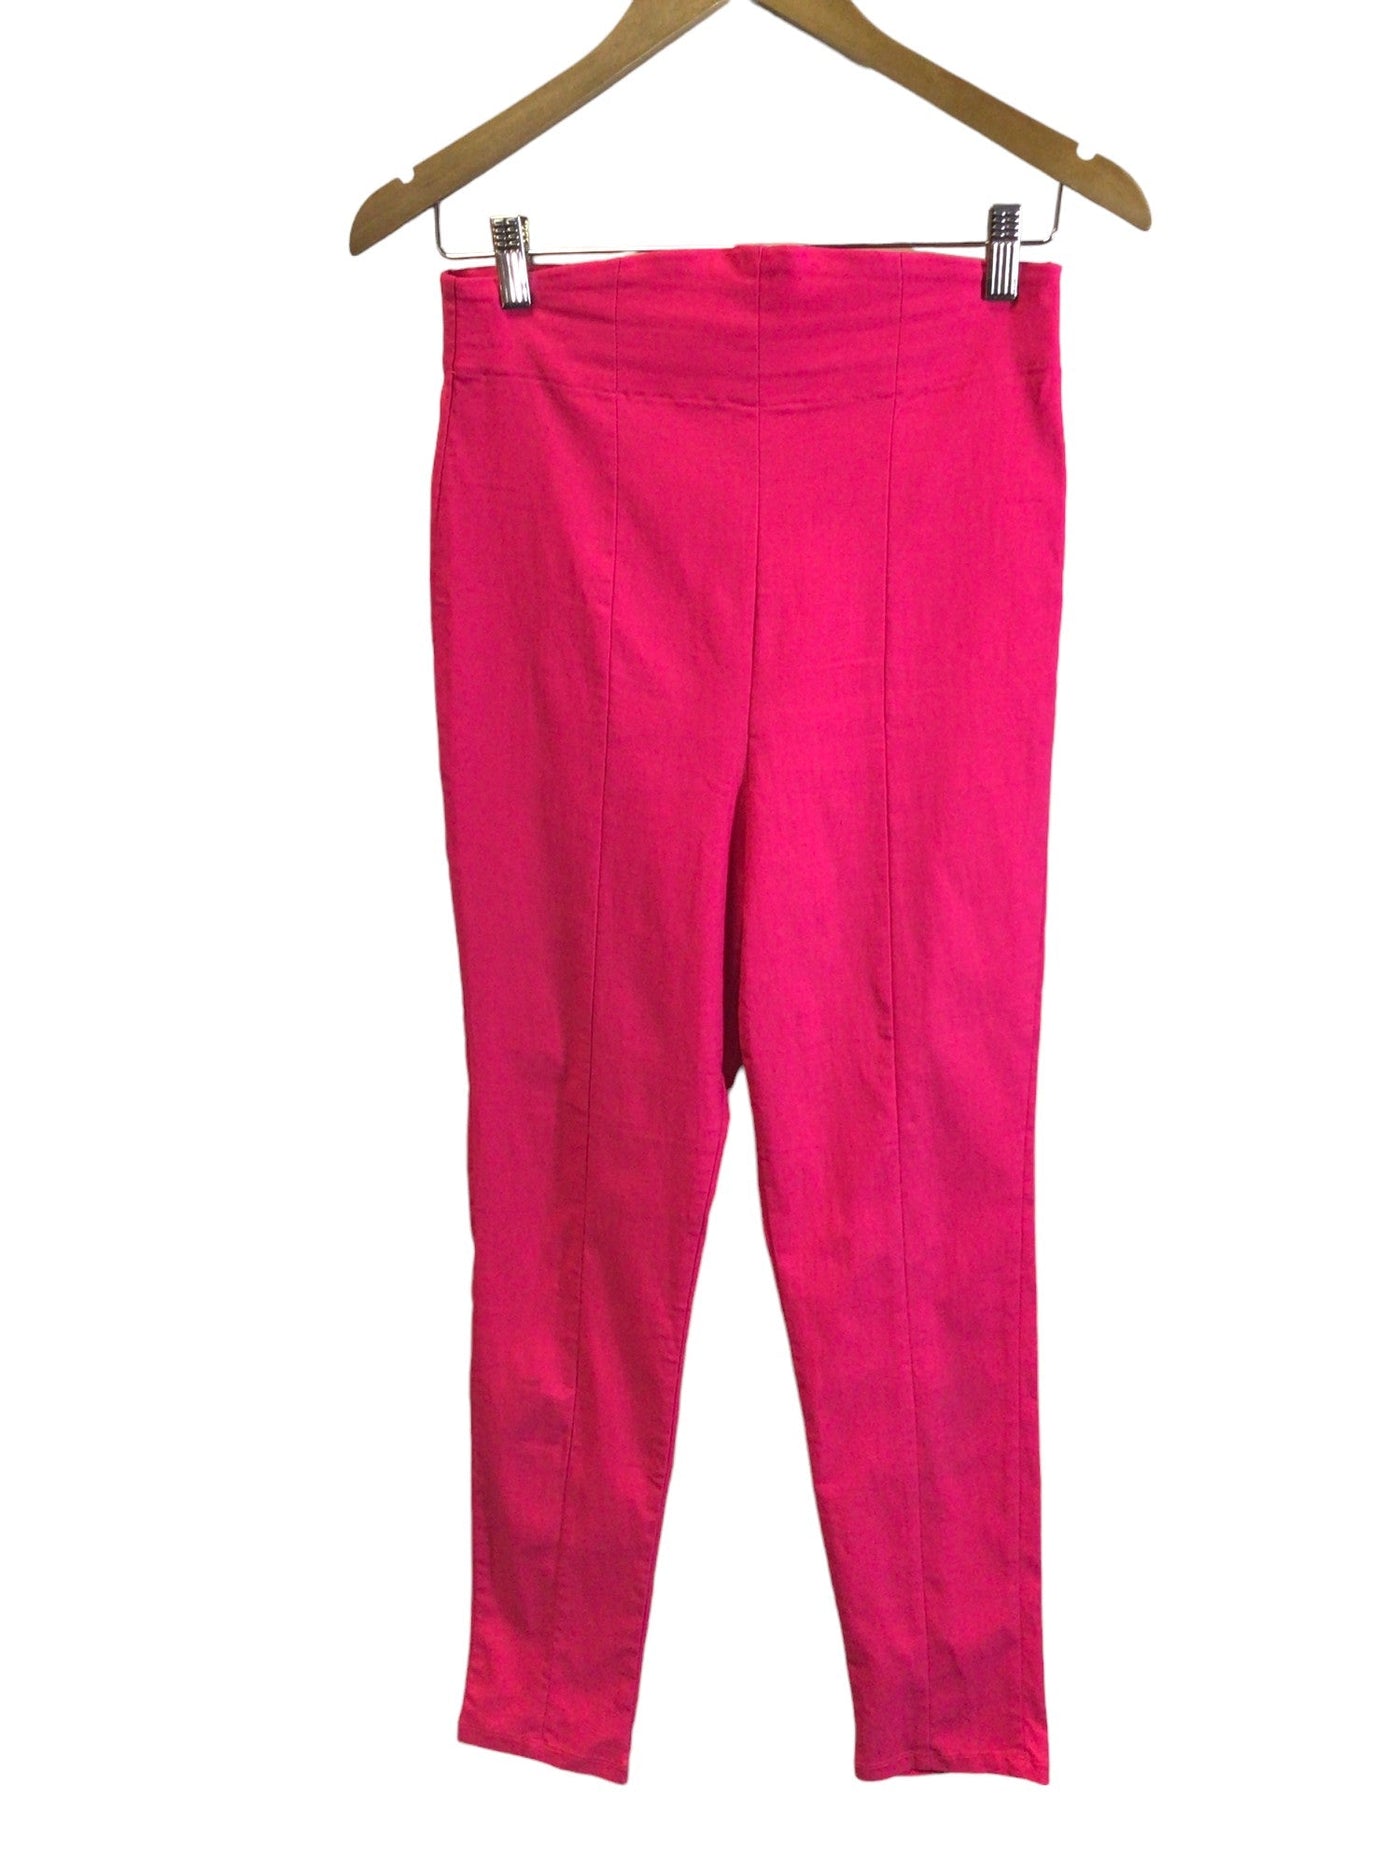 LAURA BYRNES Women Work Pants Regular fit in Pink - Size S | 15 $ KOOP